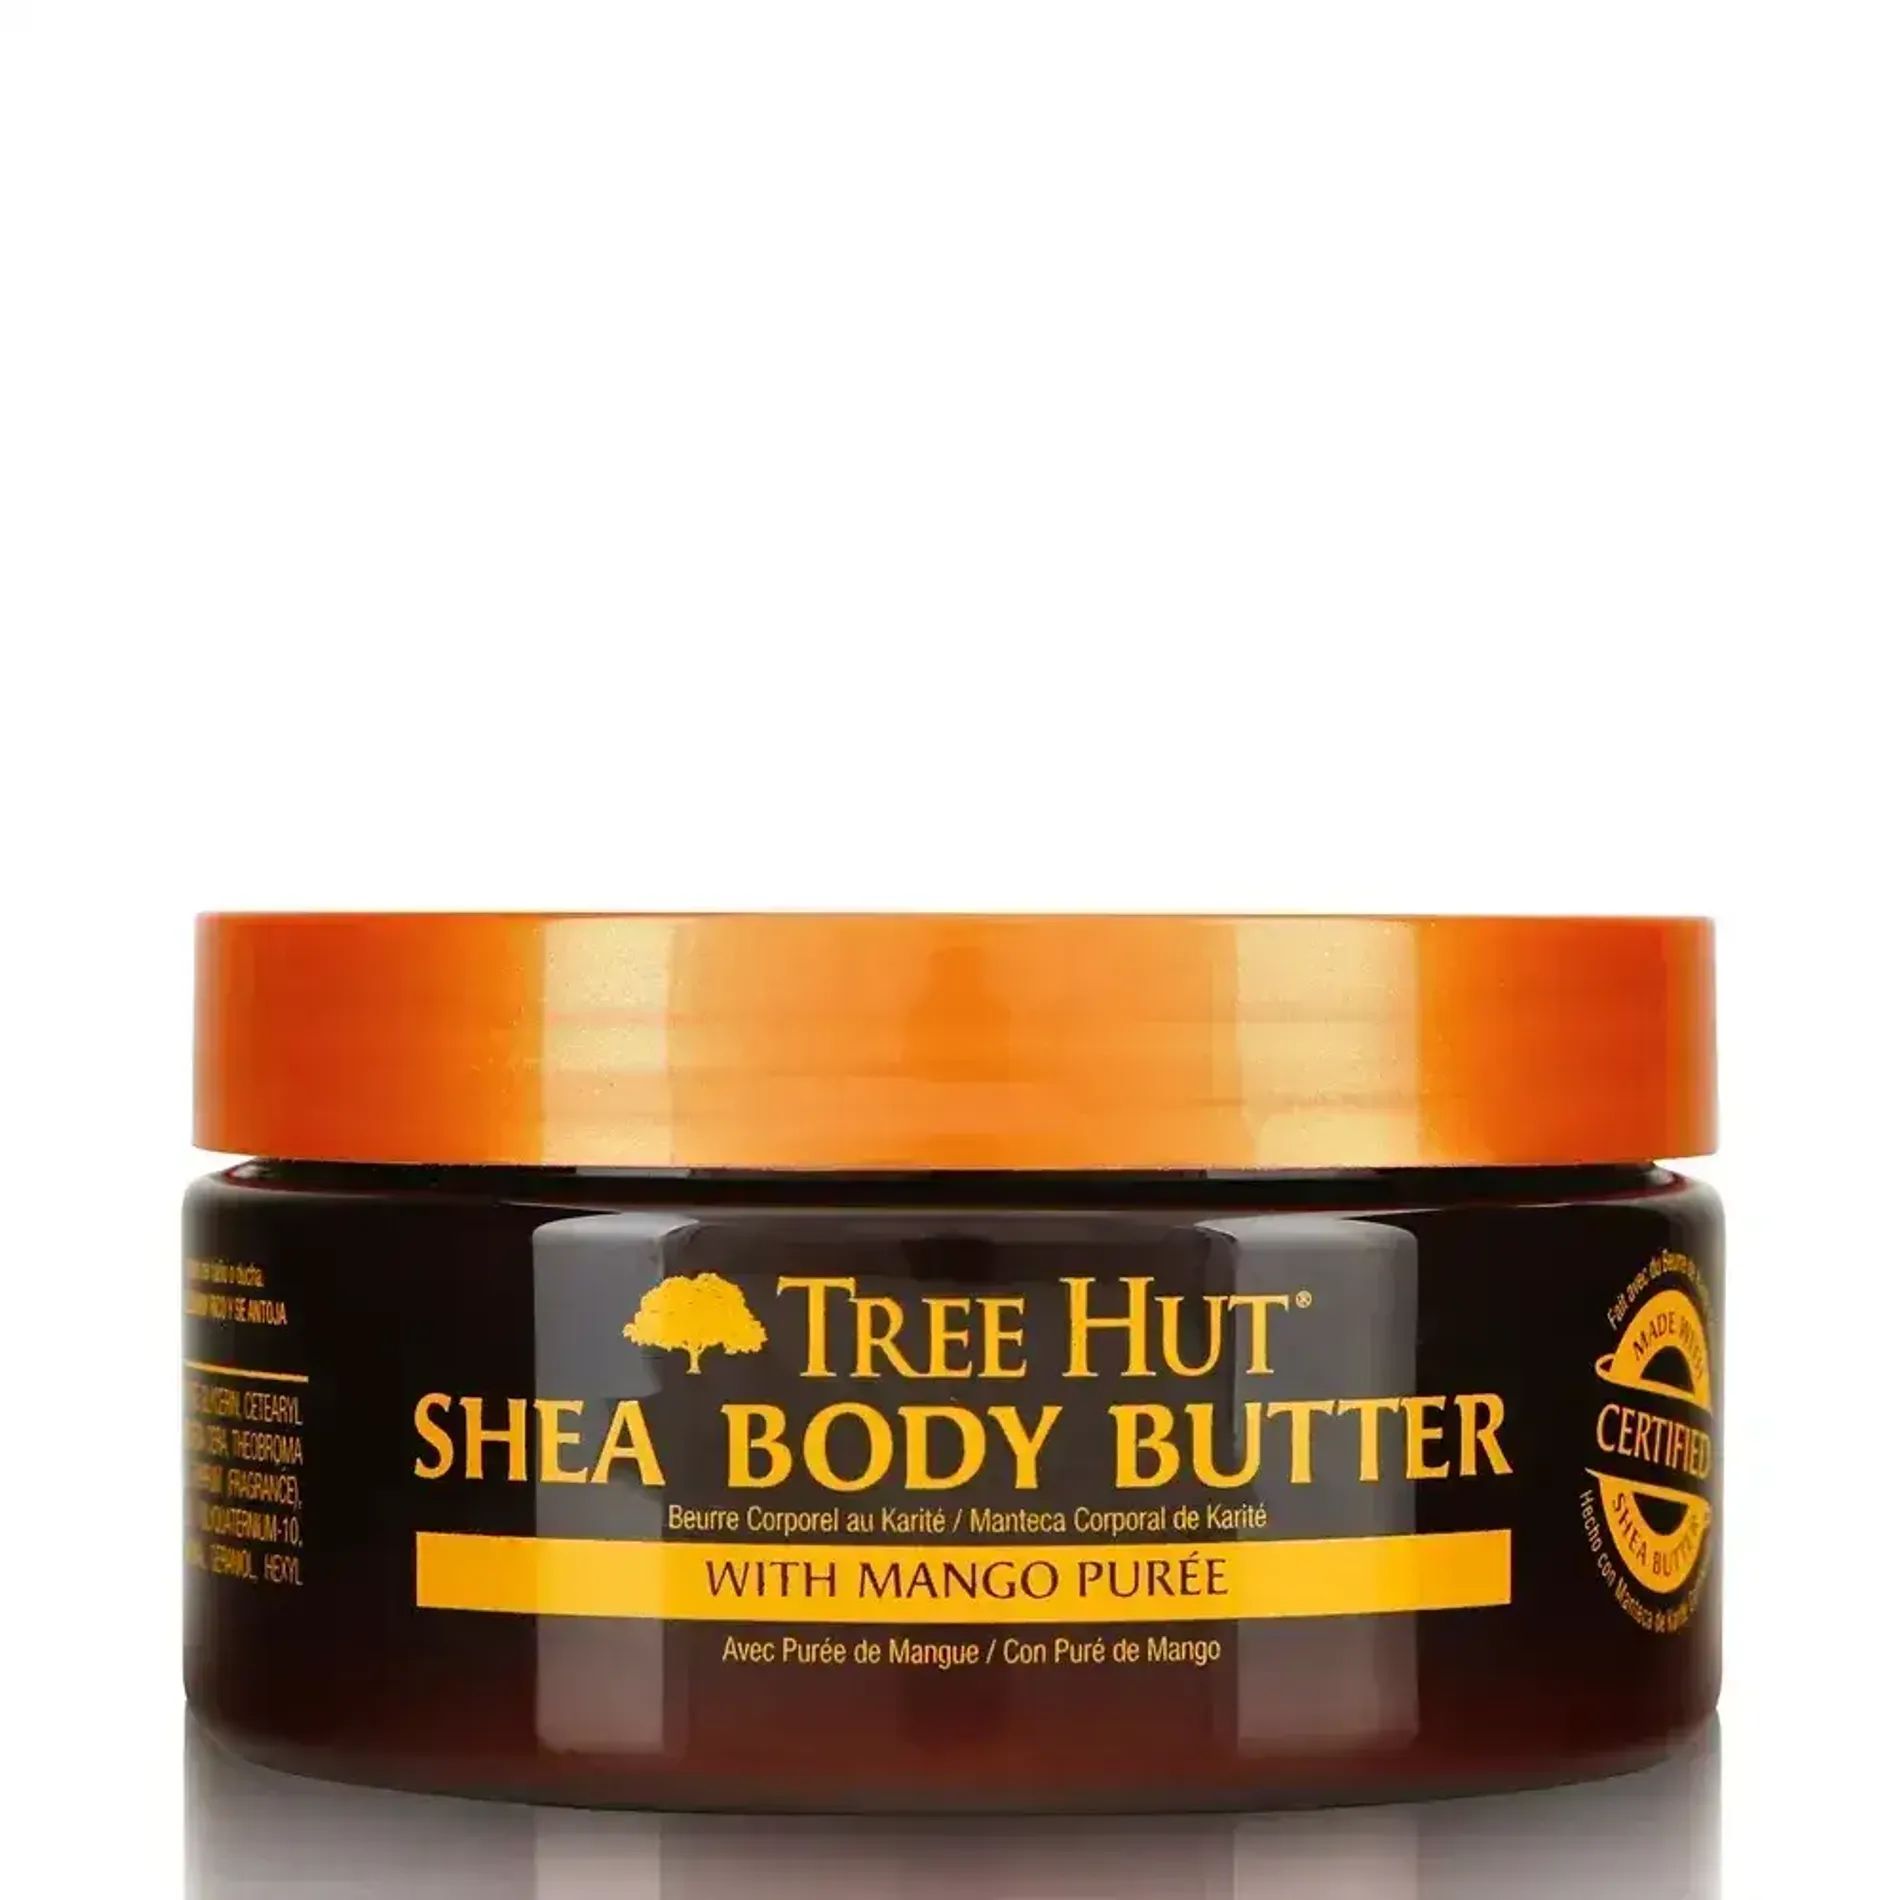 bo-duong-the-tree-hut-24-hour-intense-hydrating-shea-body-butter-198g-2